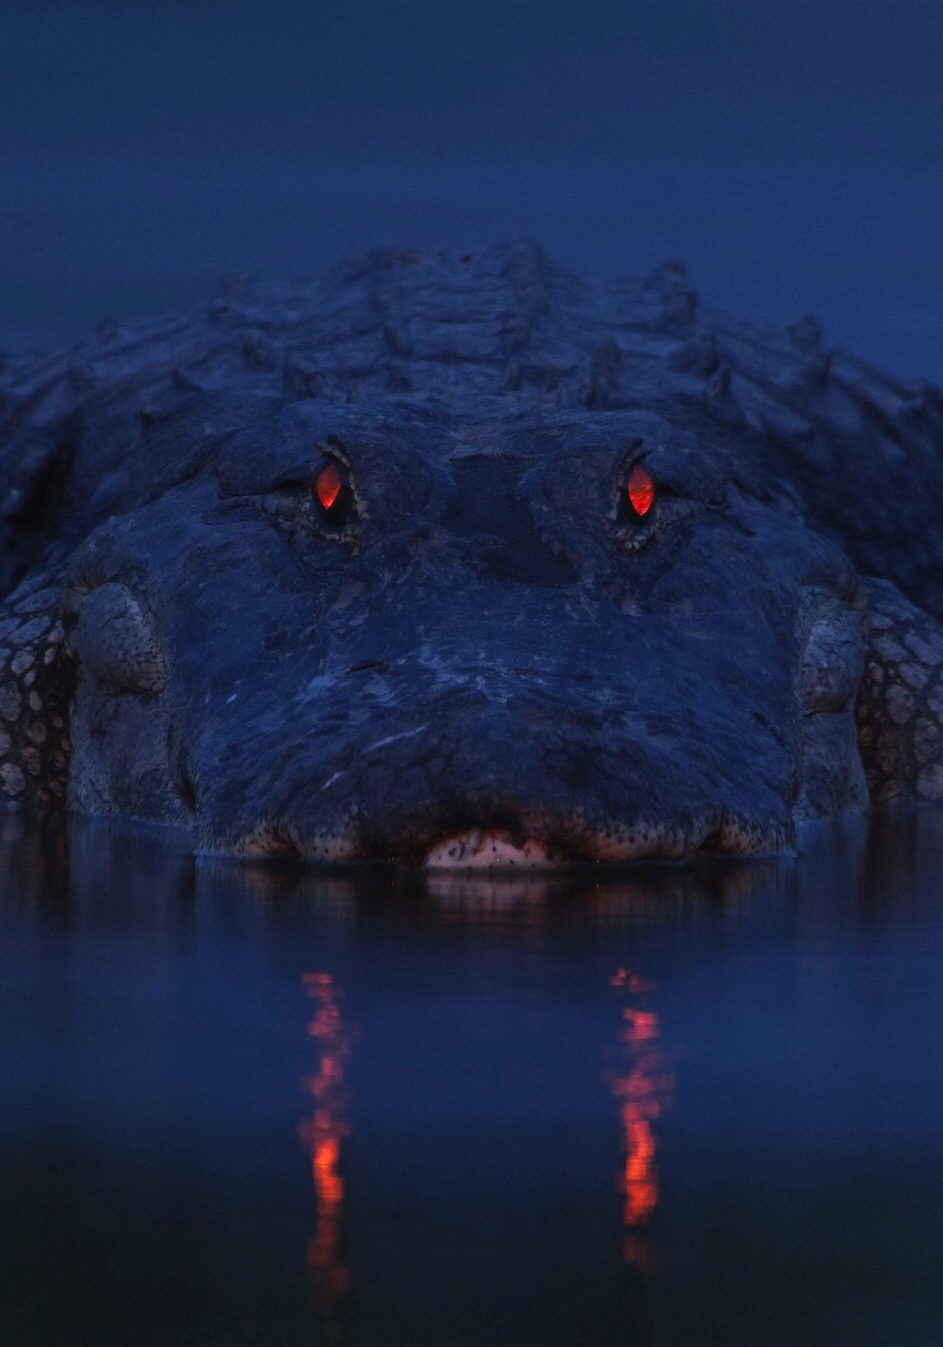 tapetum lucidum alligator